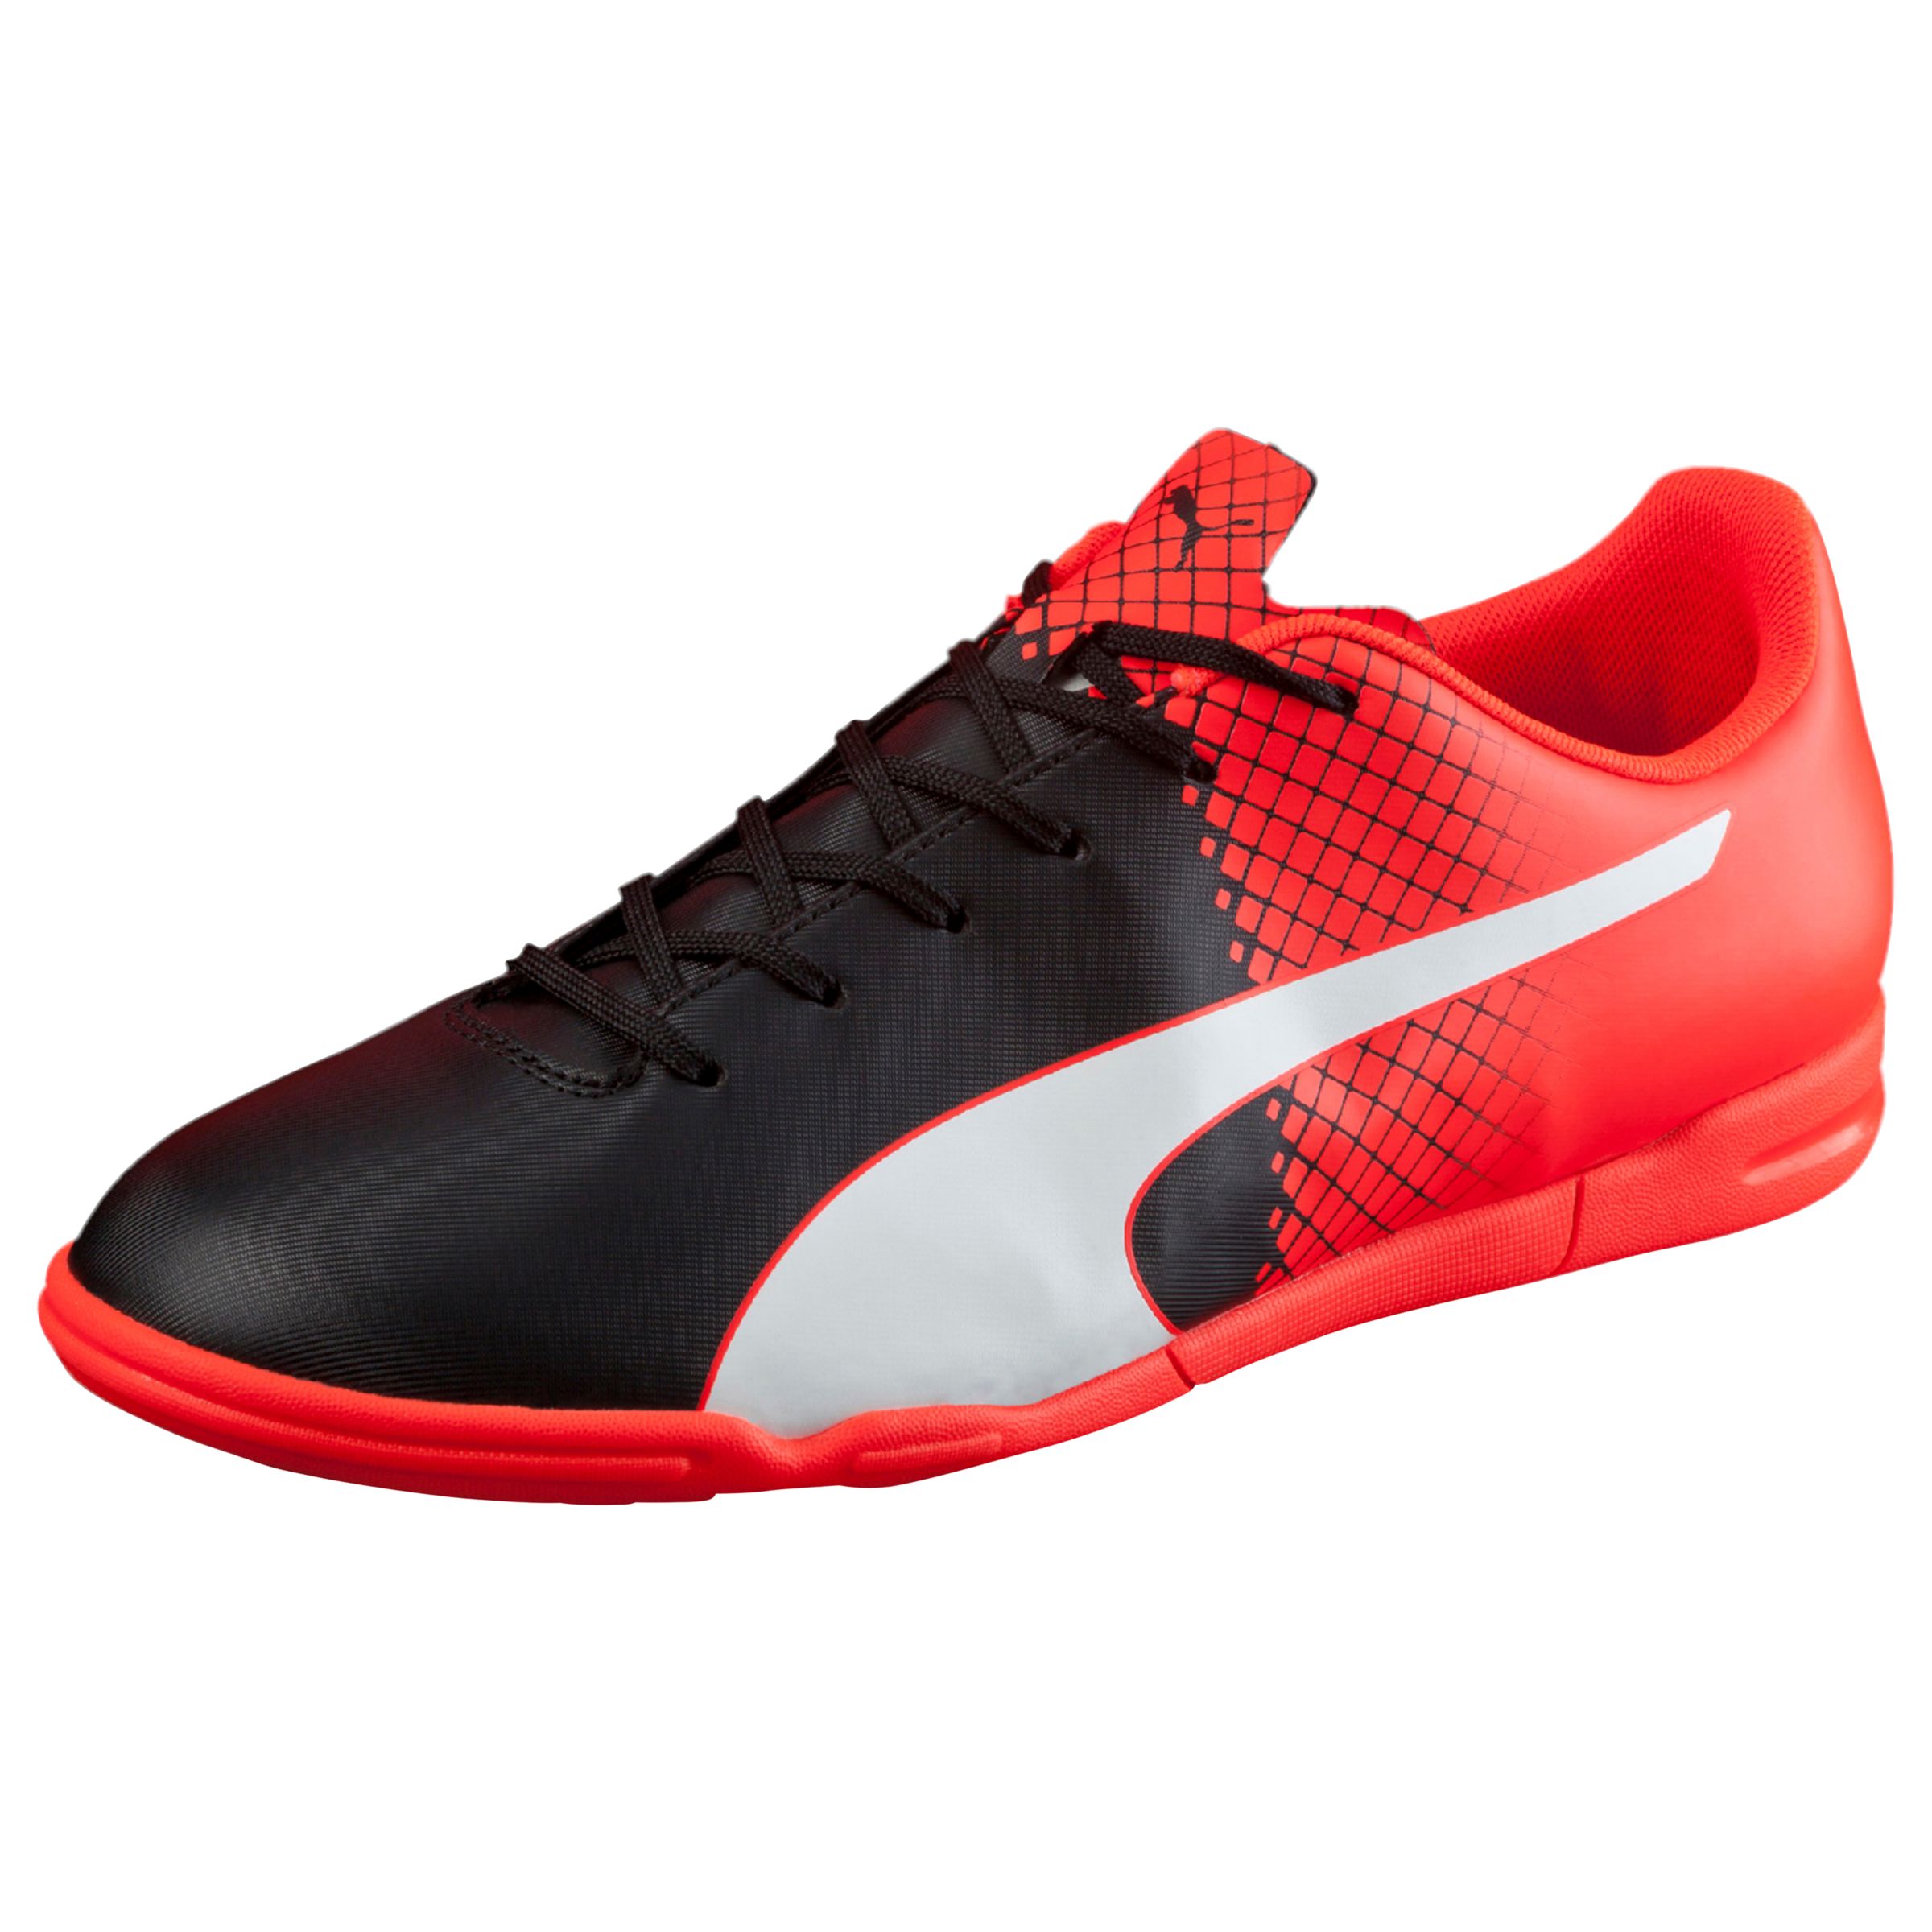 Puma Evospeed 5.5 IT Football Boots, Black/Red